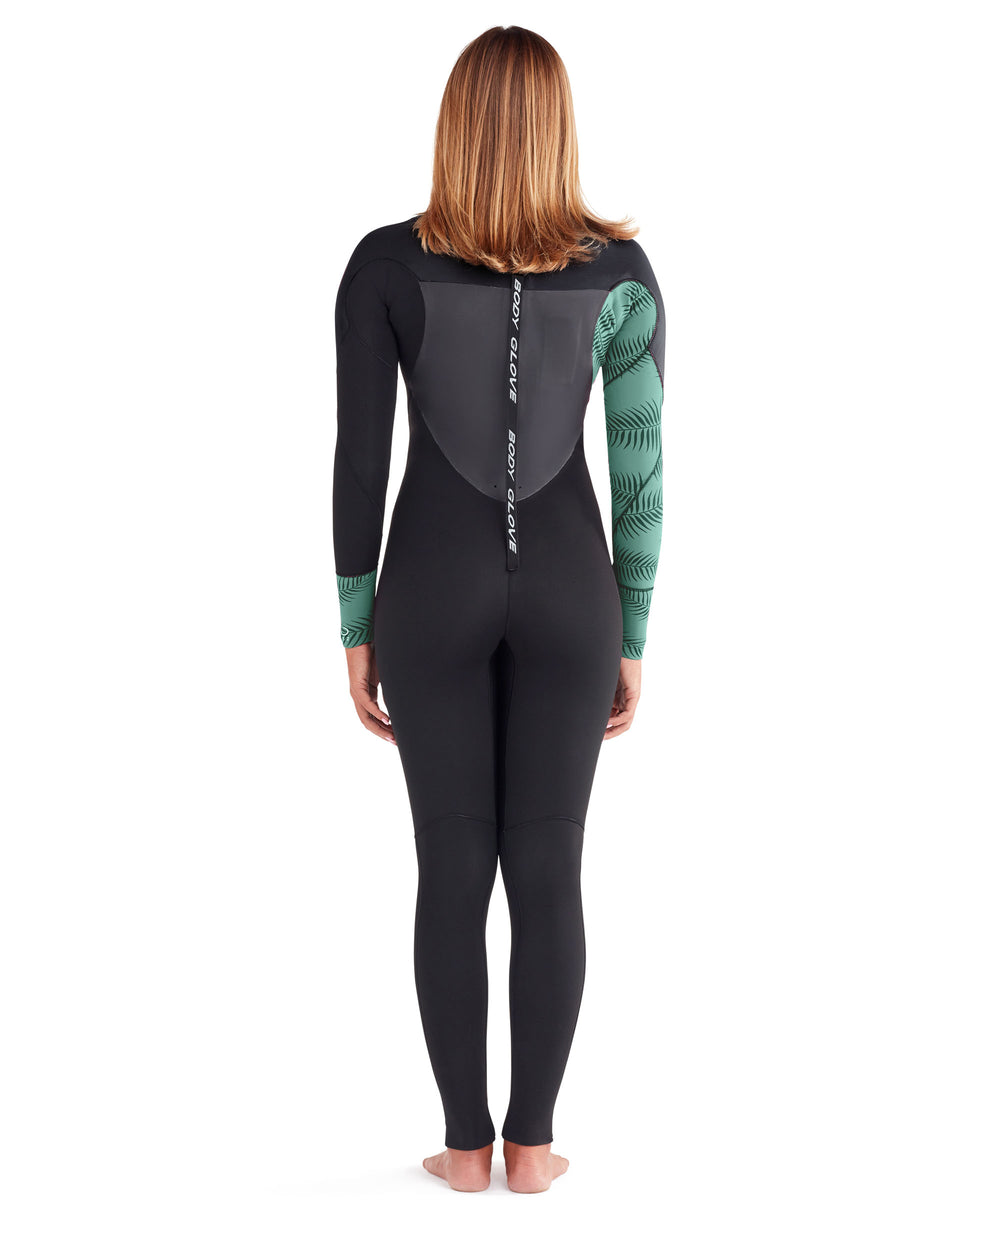 EOS 4/3mm Back-Zip Women's Fullsuit - Black/Green